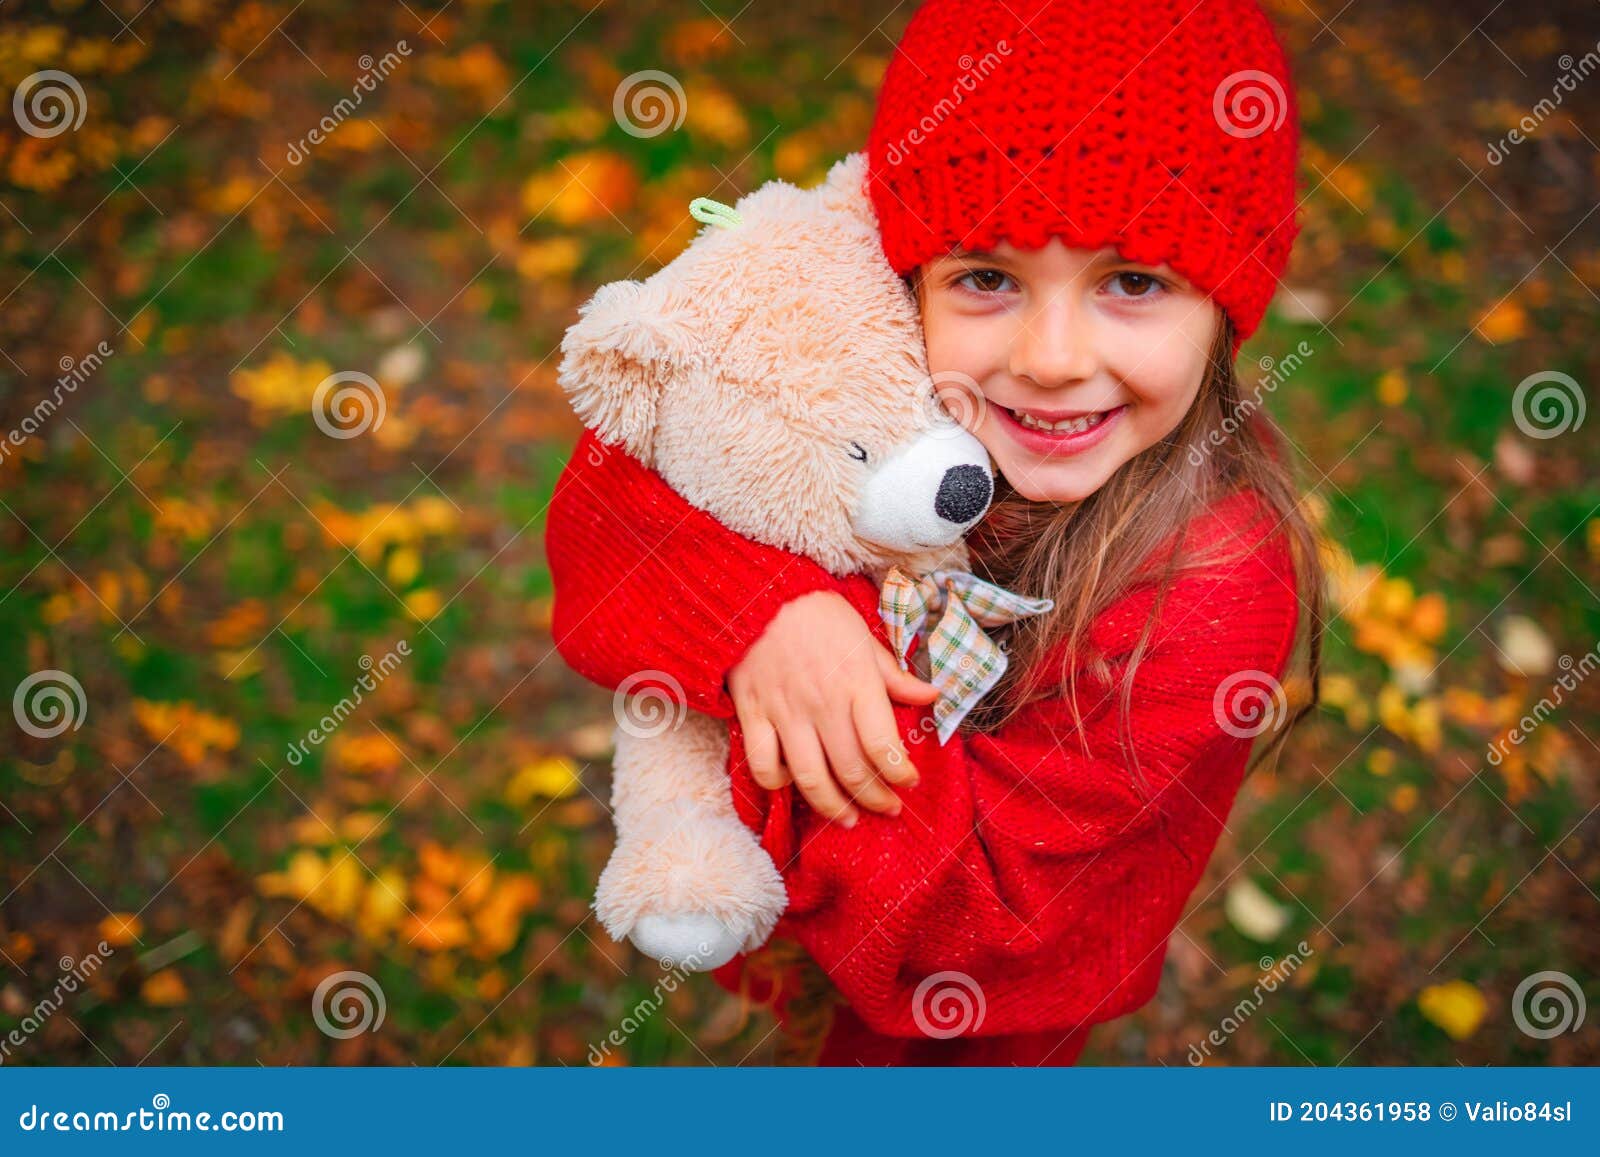 小女孩和泰迪熊野餐 库存照片. 图片 包括有 关闭, 户外, 子项, 使用, 白种人, 野餐, 龙舌兰 - 189338348